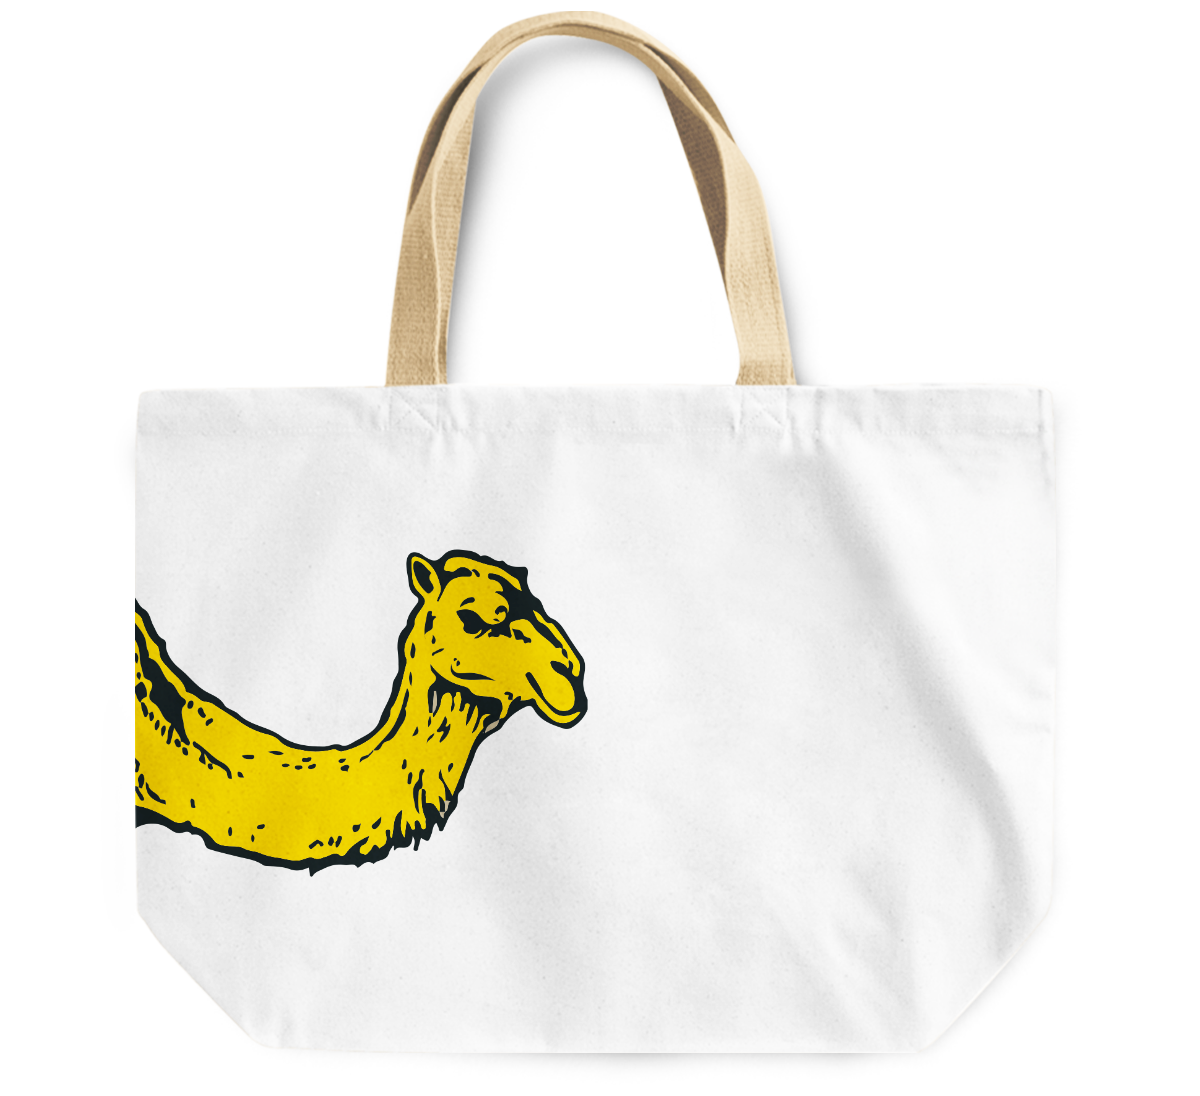 Tote Bag Camel desert animal Canvas Shoulder Bag Everyday Use - Totes ...